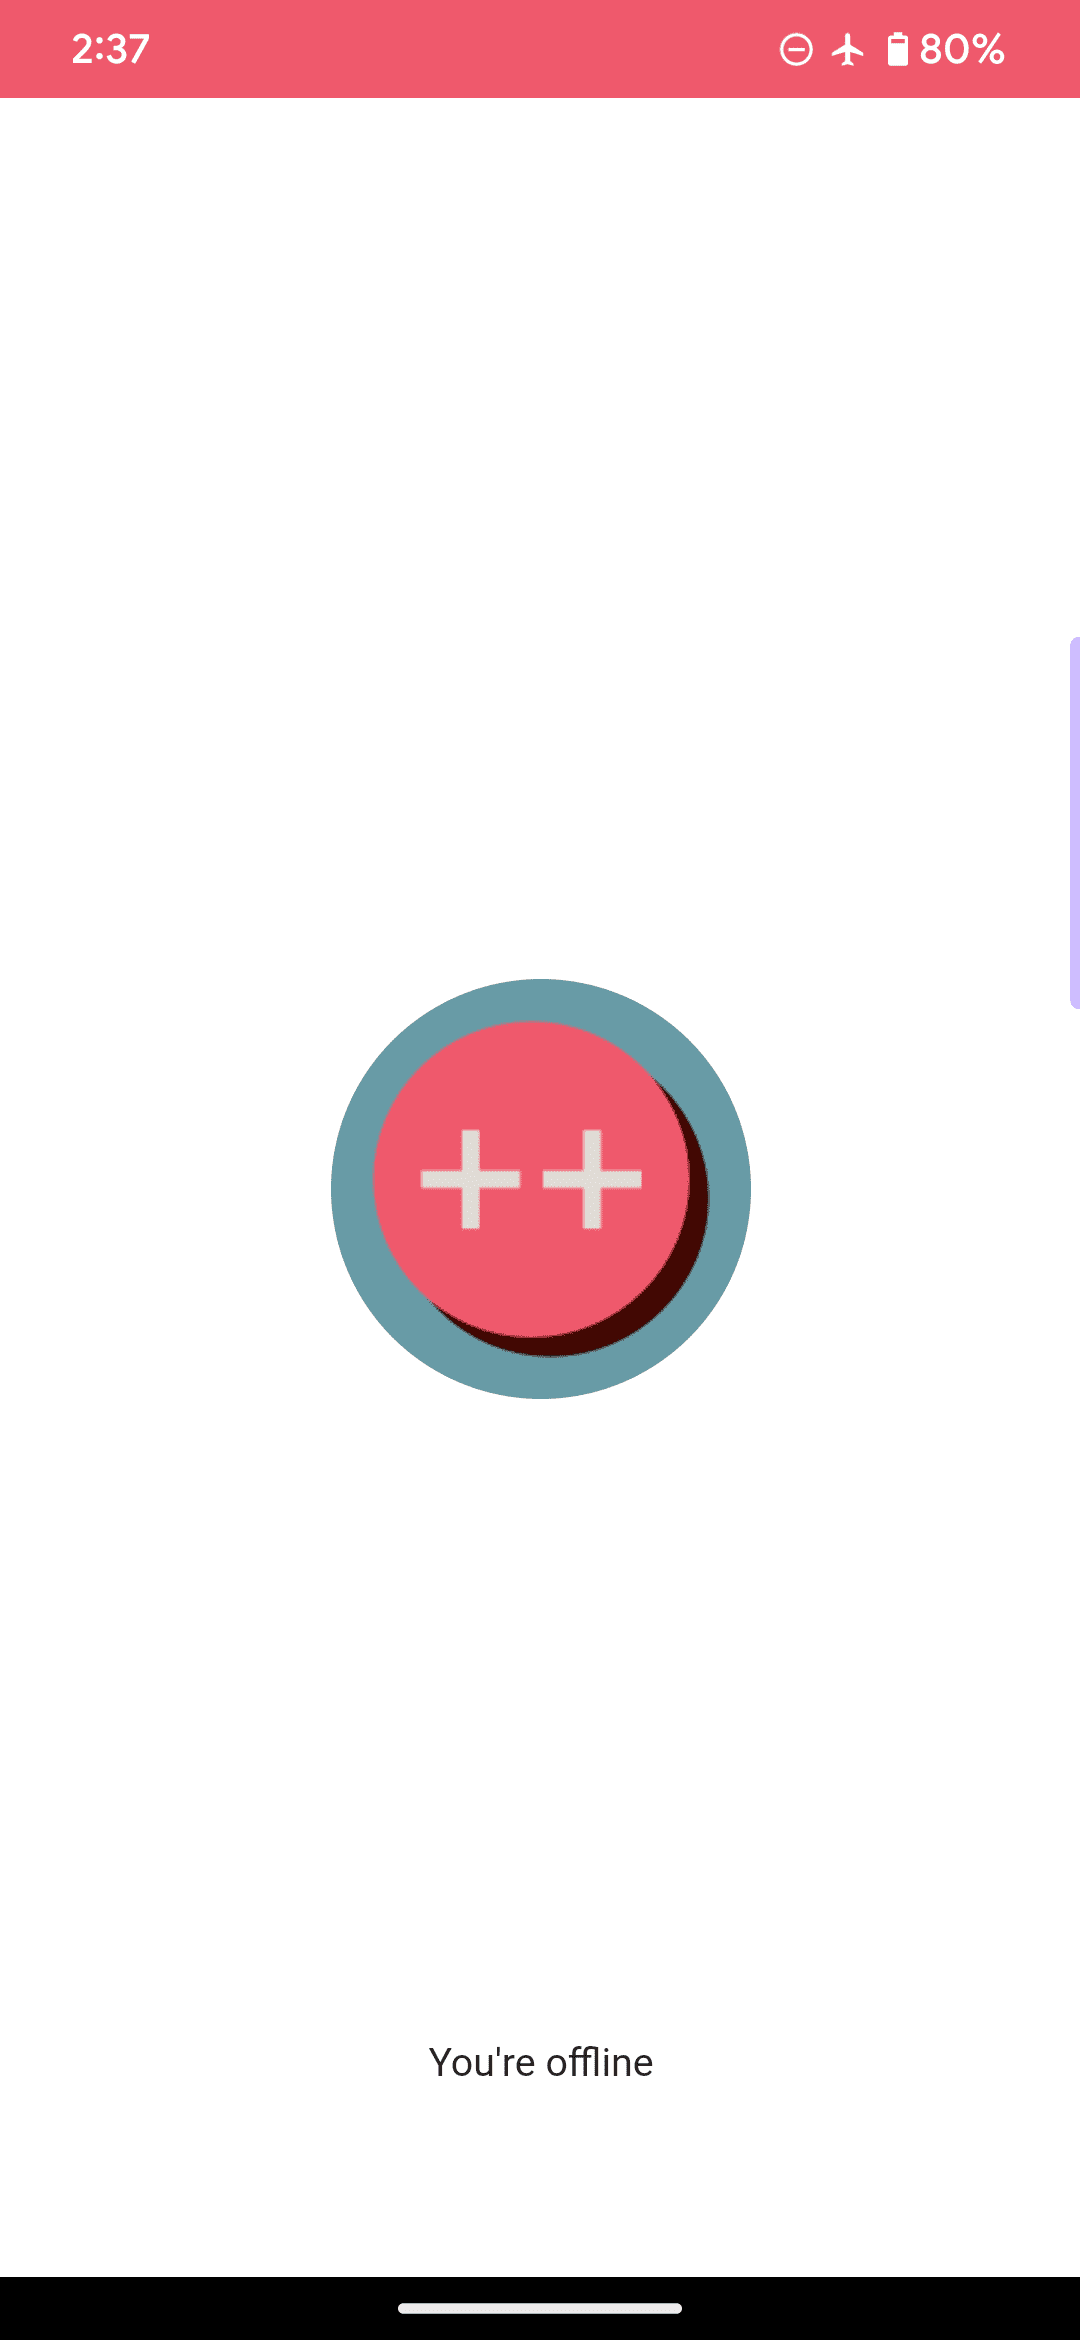 示例 Web 应用的默认离线页面，其中徽标是一个粉色圆圈和两个加号，并且包含“you are offline”消息。